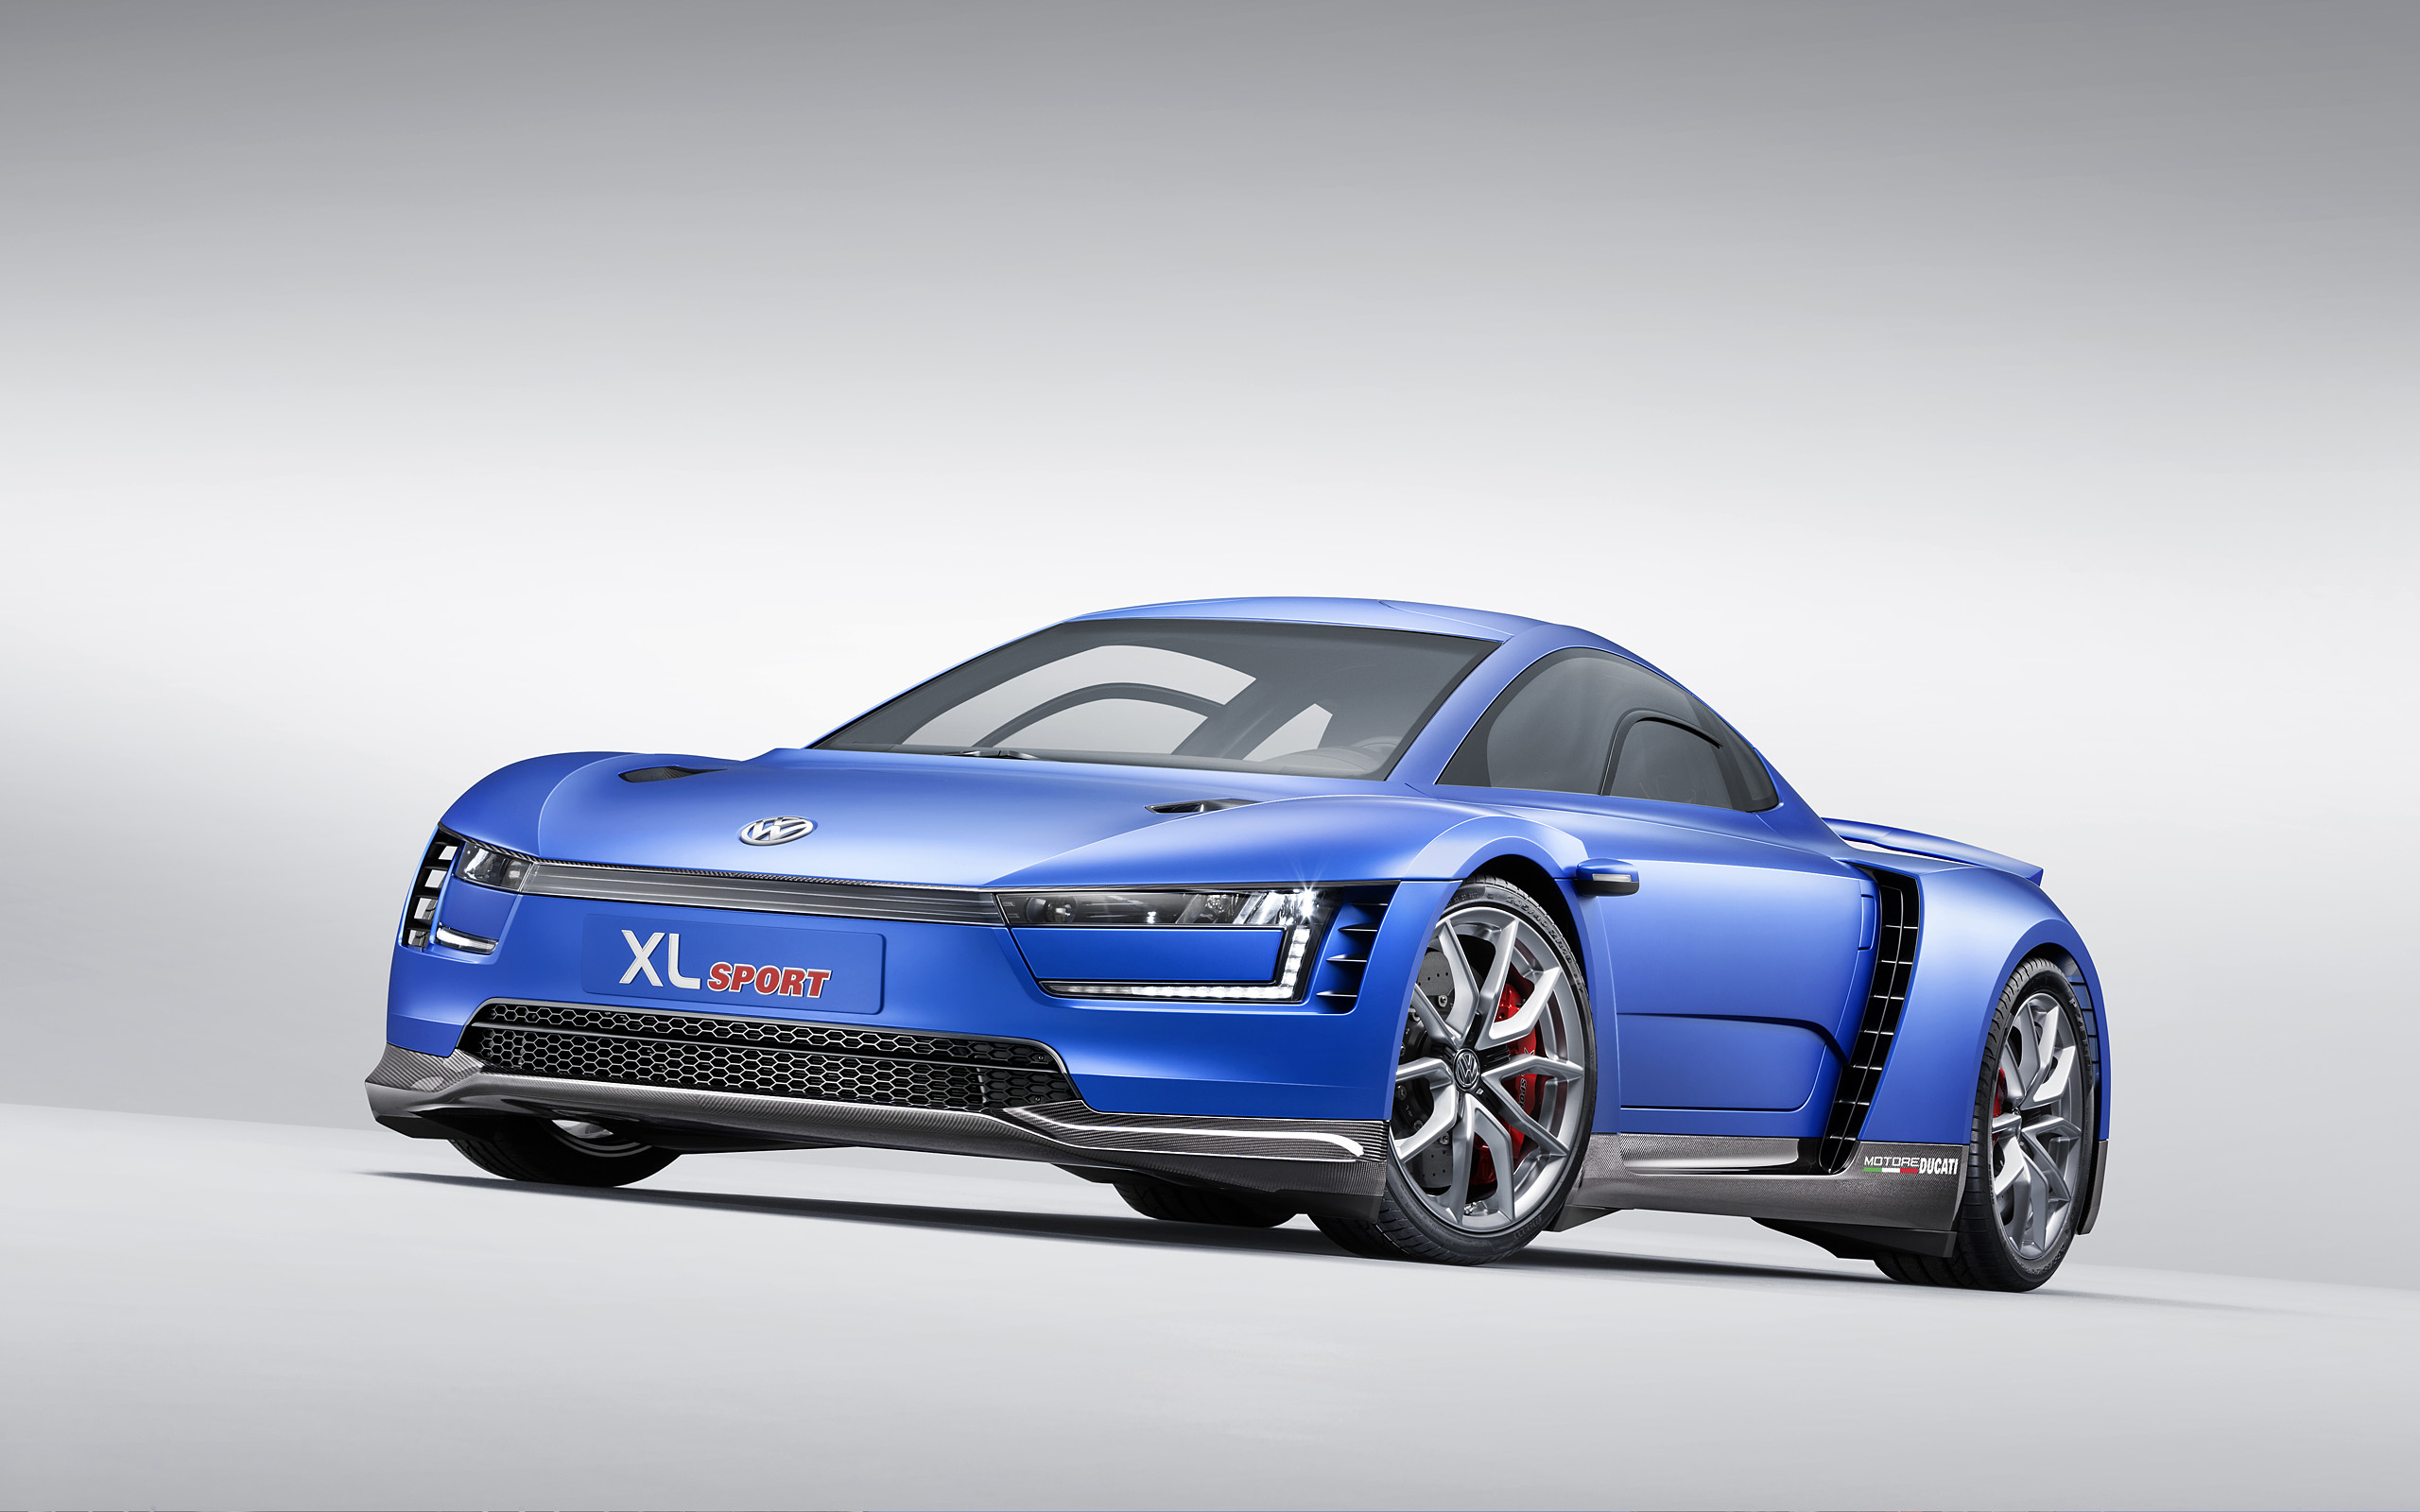  2014 Volkswagen XL Sport Concept Wallpaper.